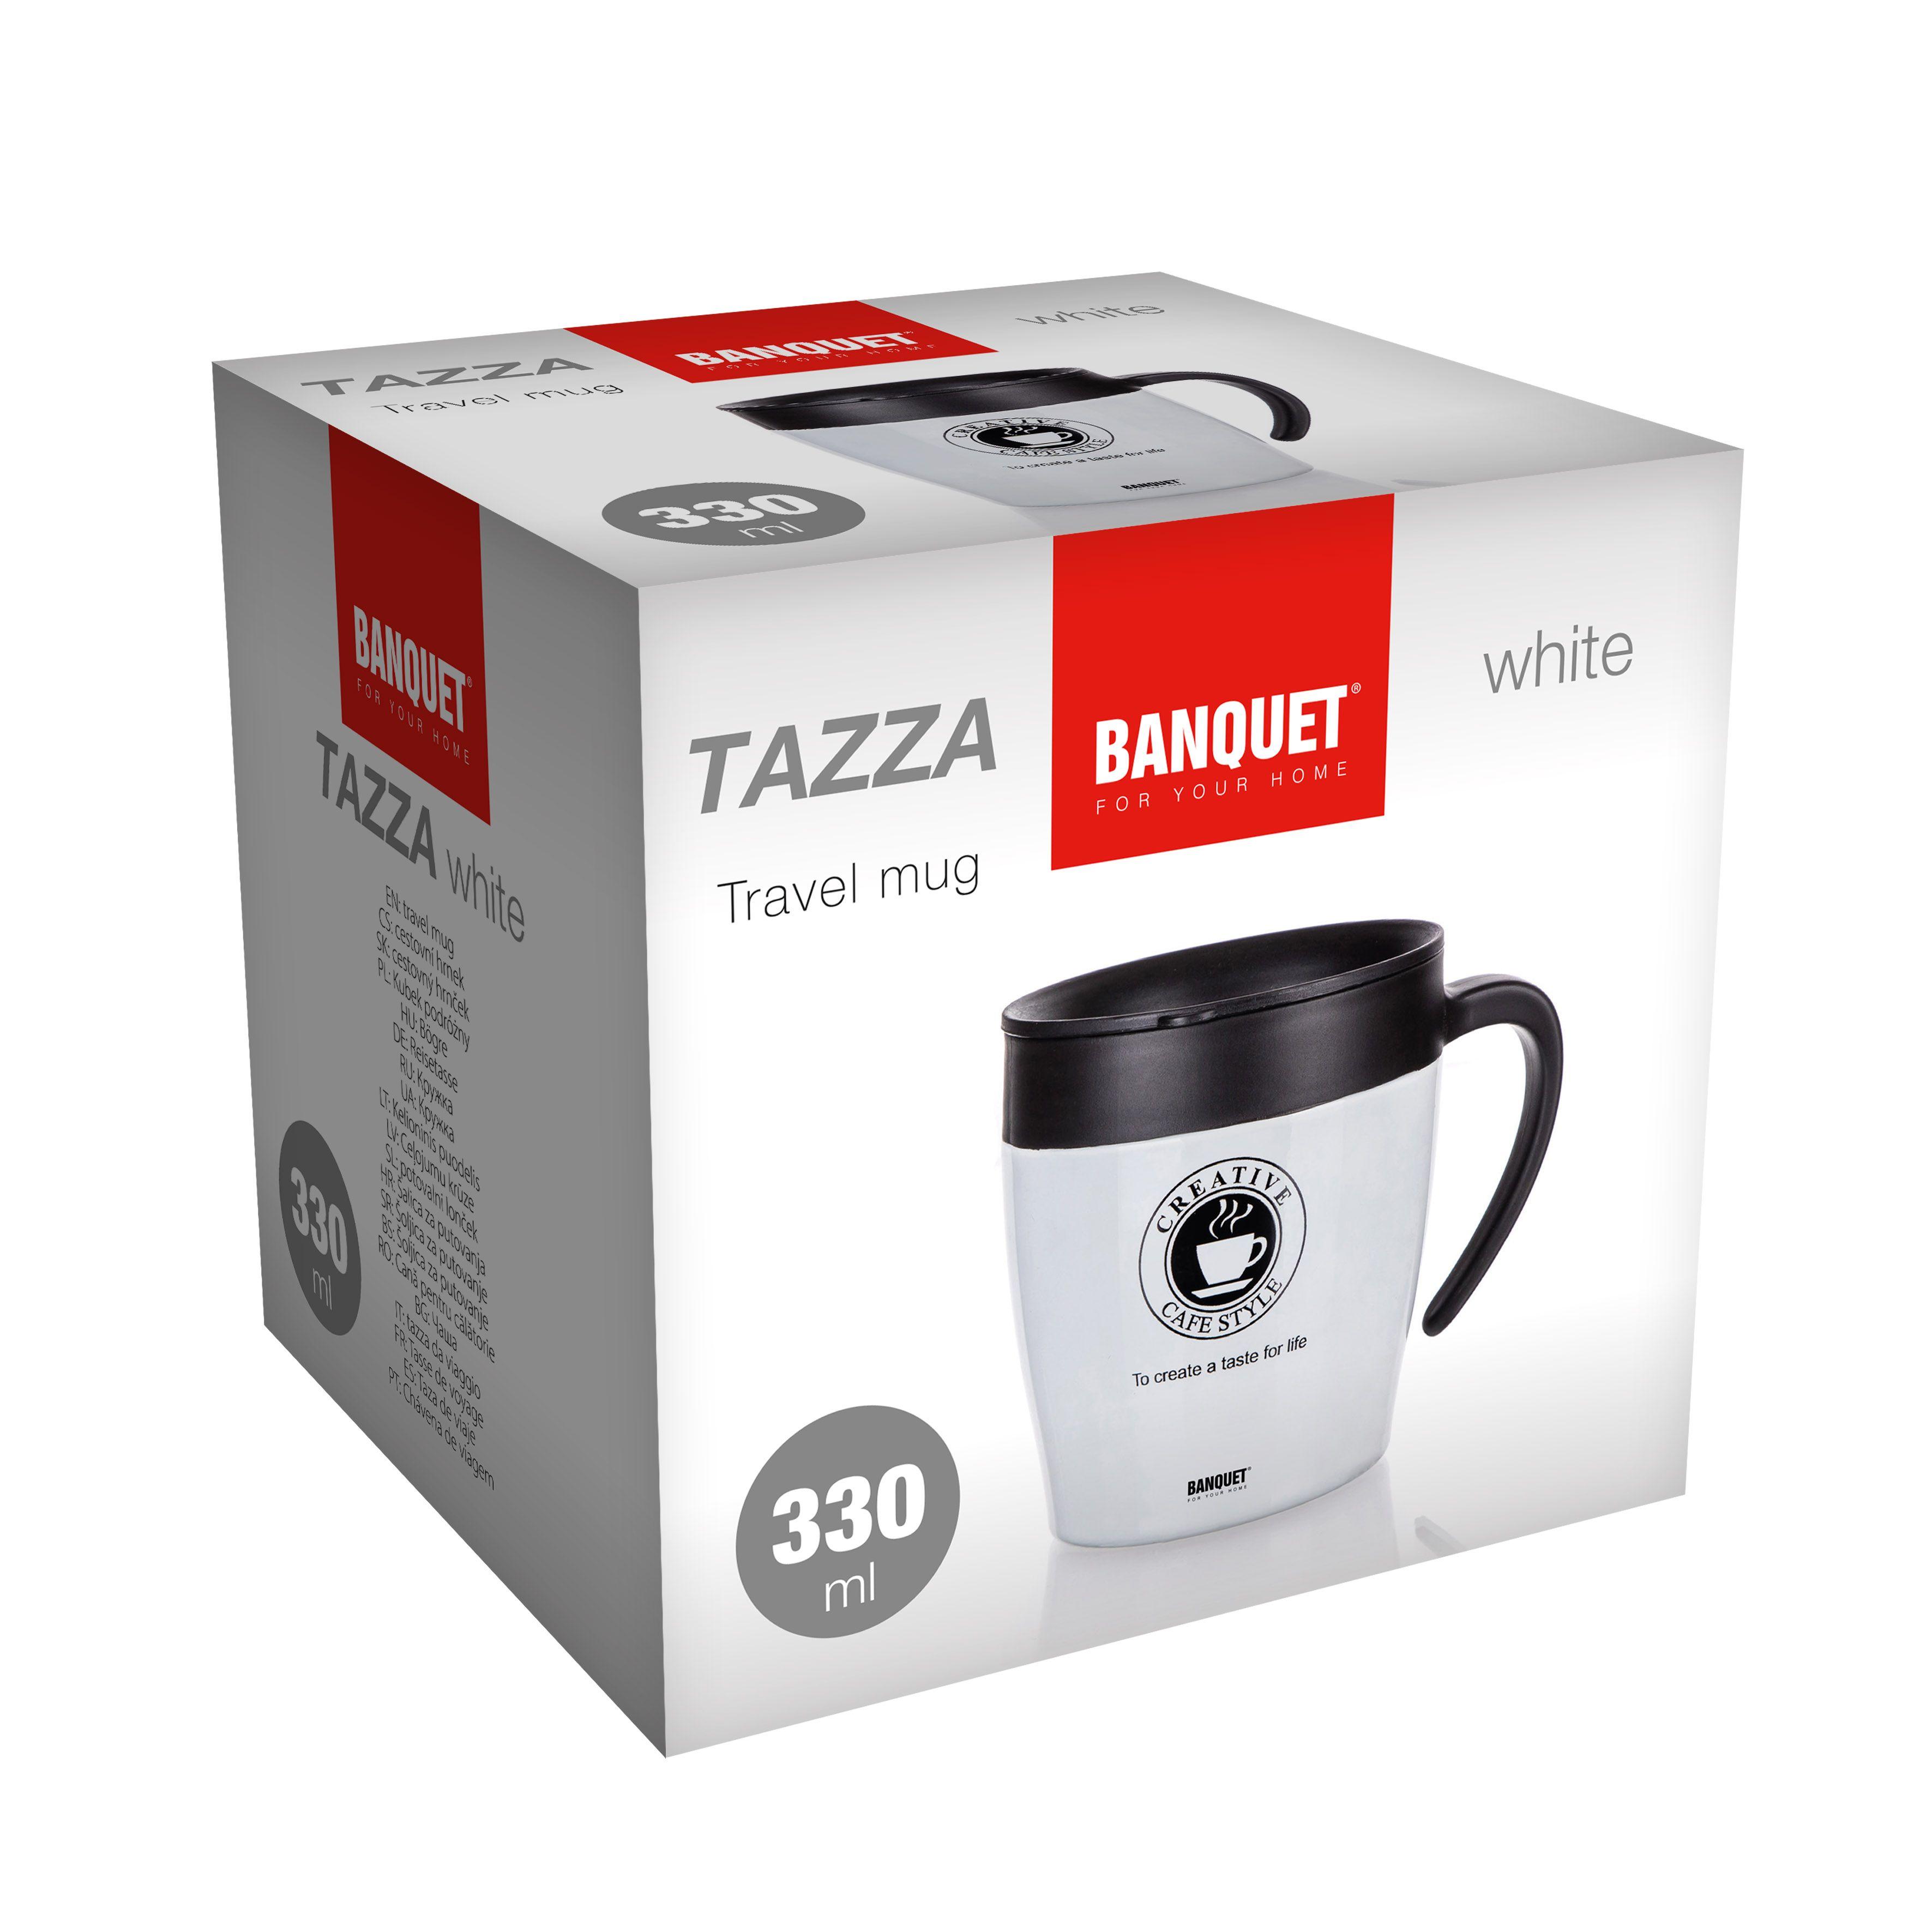 TAZZA 330 ml travel mug, white